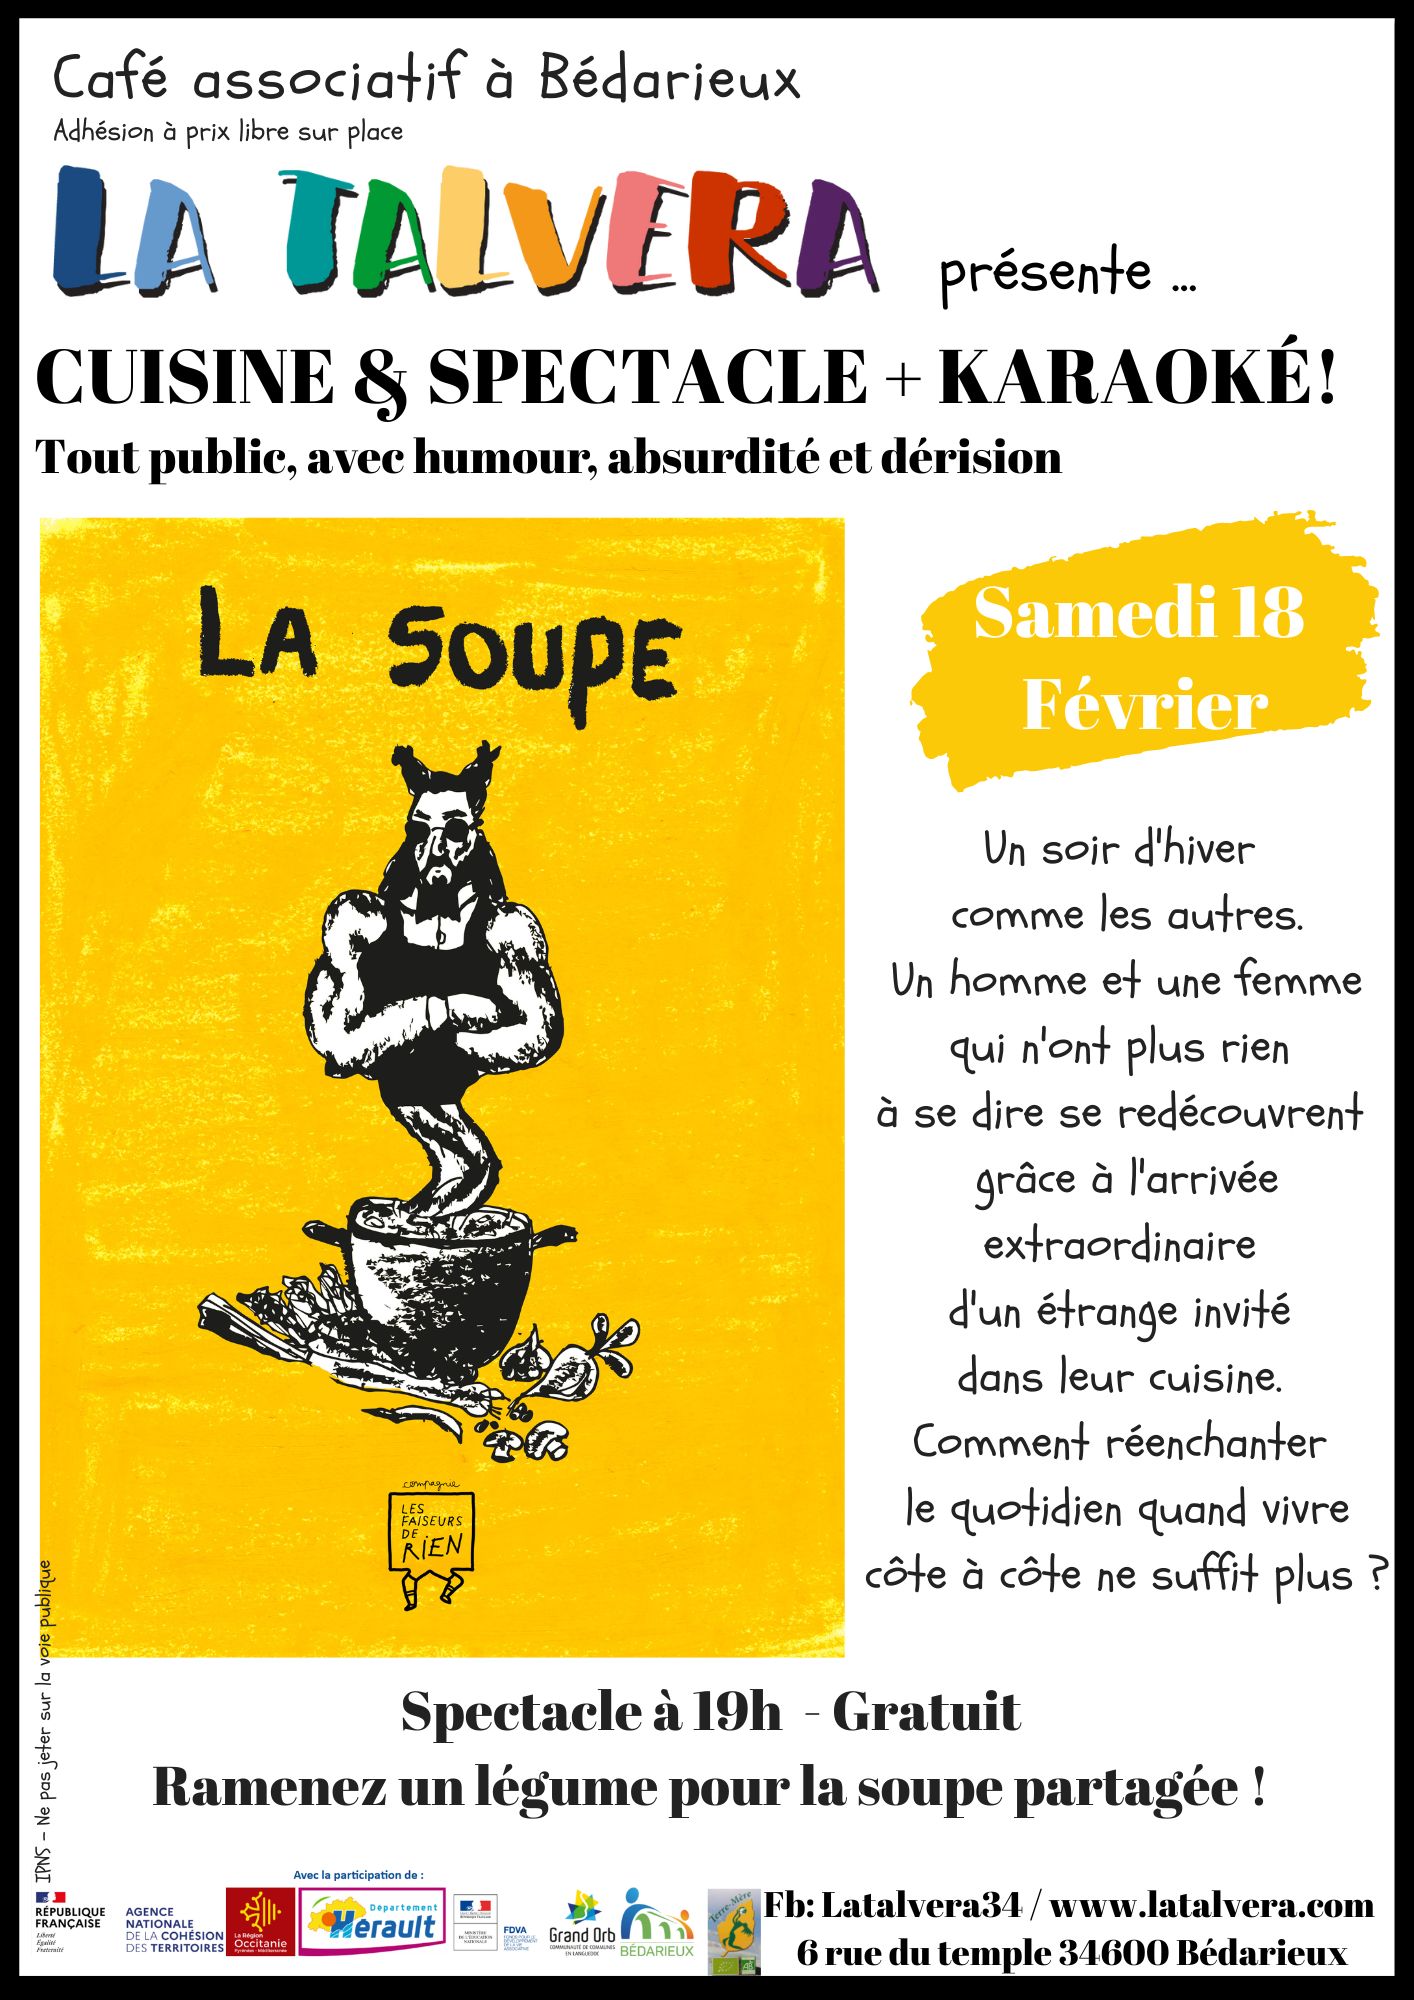 Soirée Cuisine/Spectacle/Karaoké!